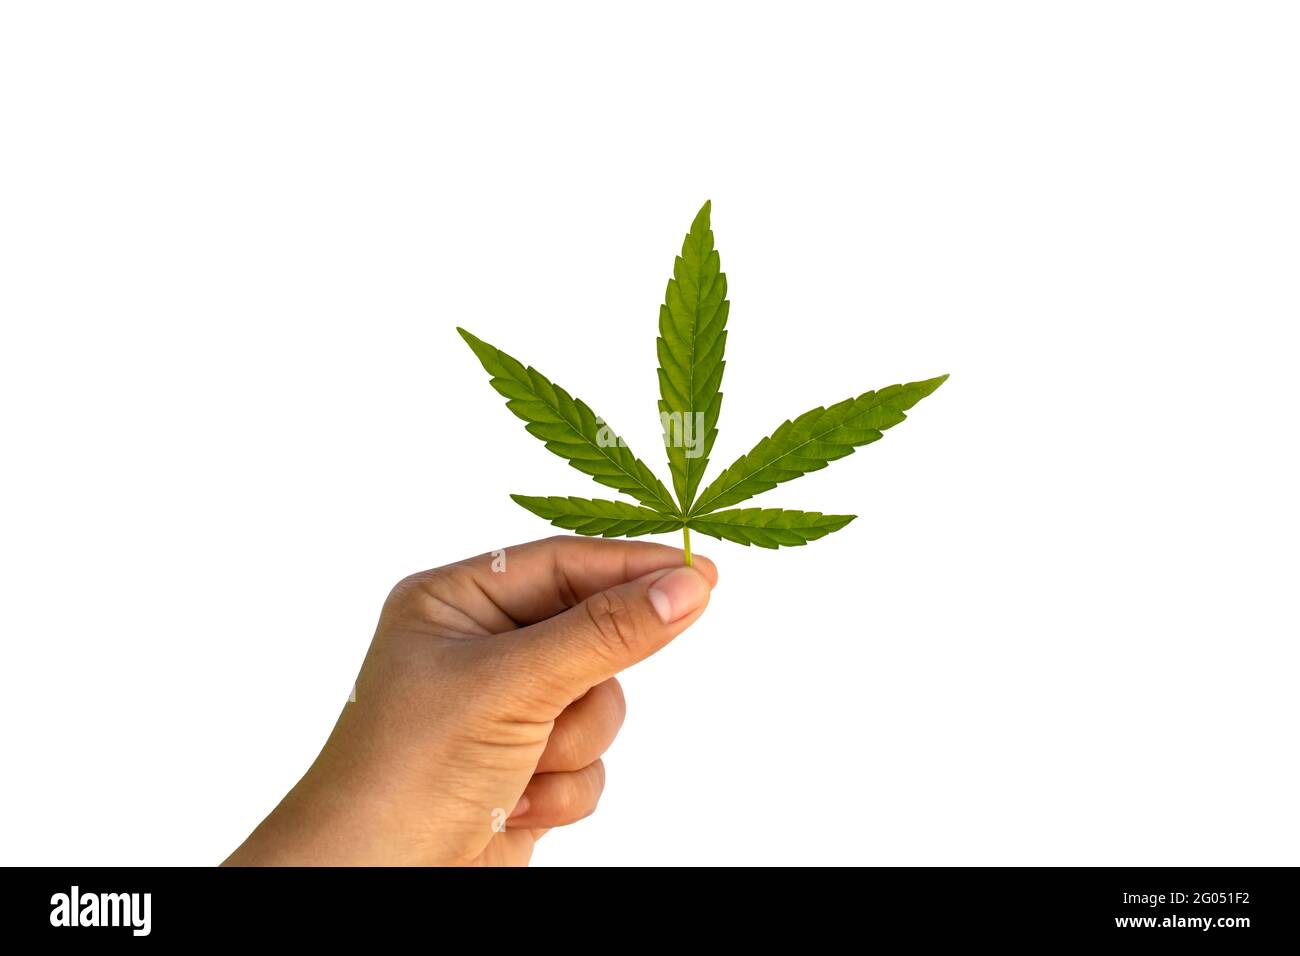 Les feuilles vertes de cannabis sont isolées à la main sur fond blanc avec le chemin de coupure. Concept de l'utilisation du cannabis à des fins médicales. Banque D'Images